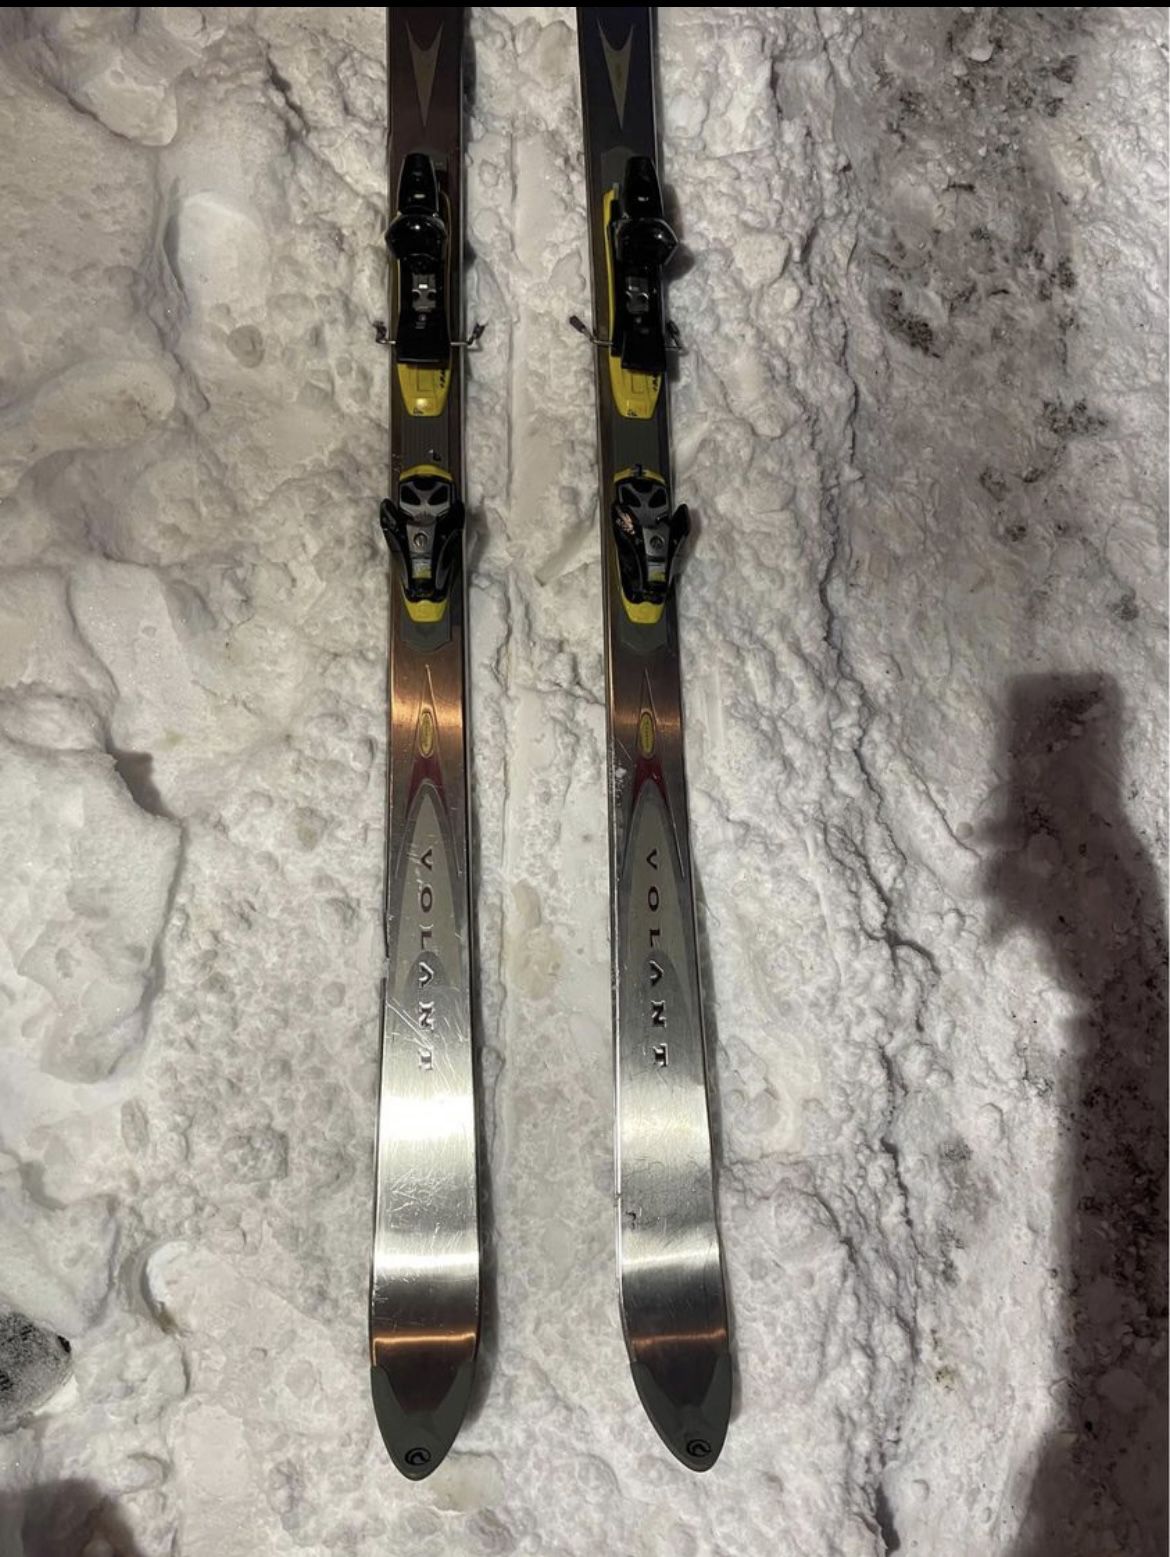 USA made VOLANT Ti CHUBB Titanium Powder Skis with SALOMON ski bindings